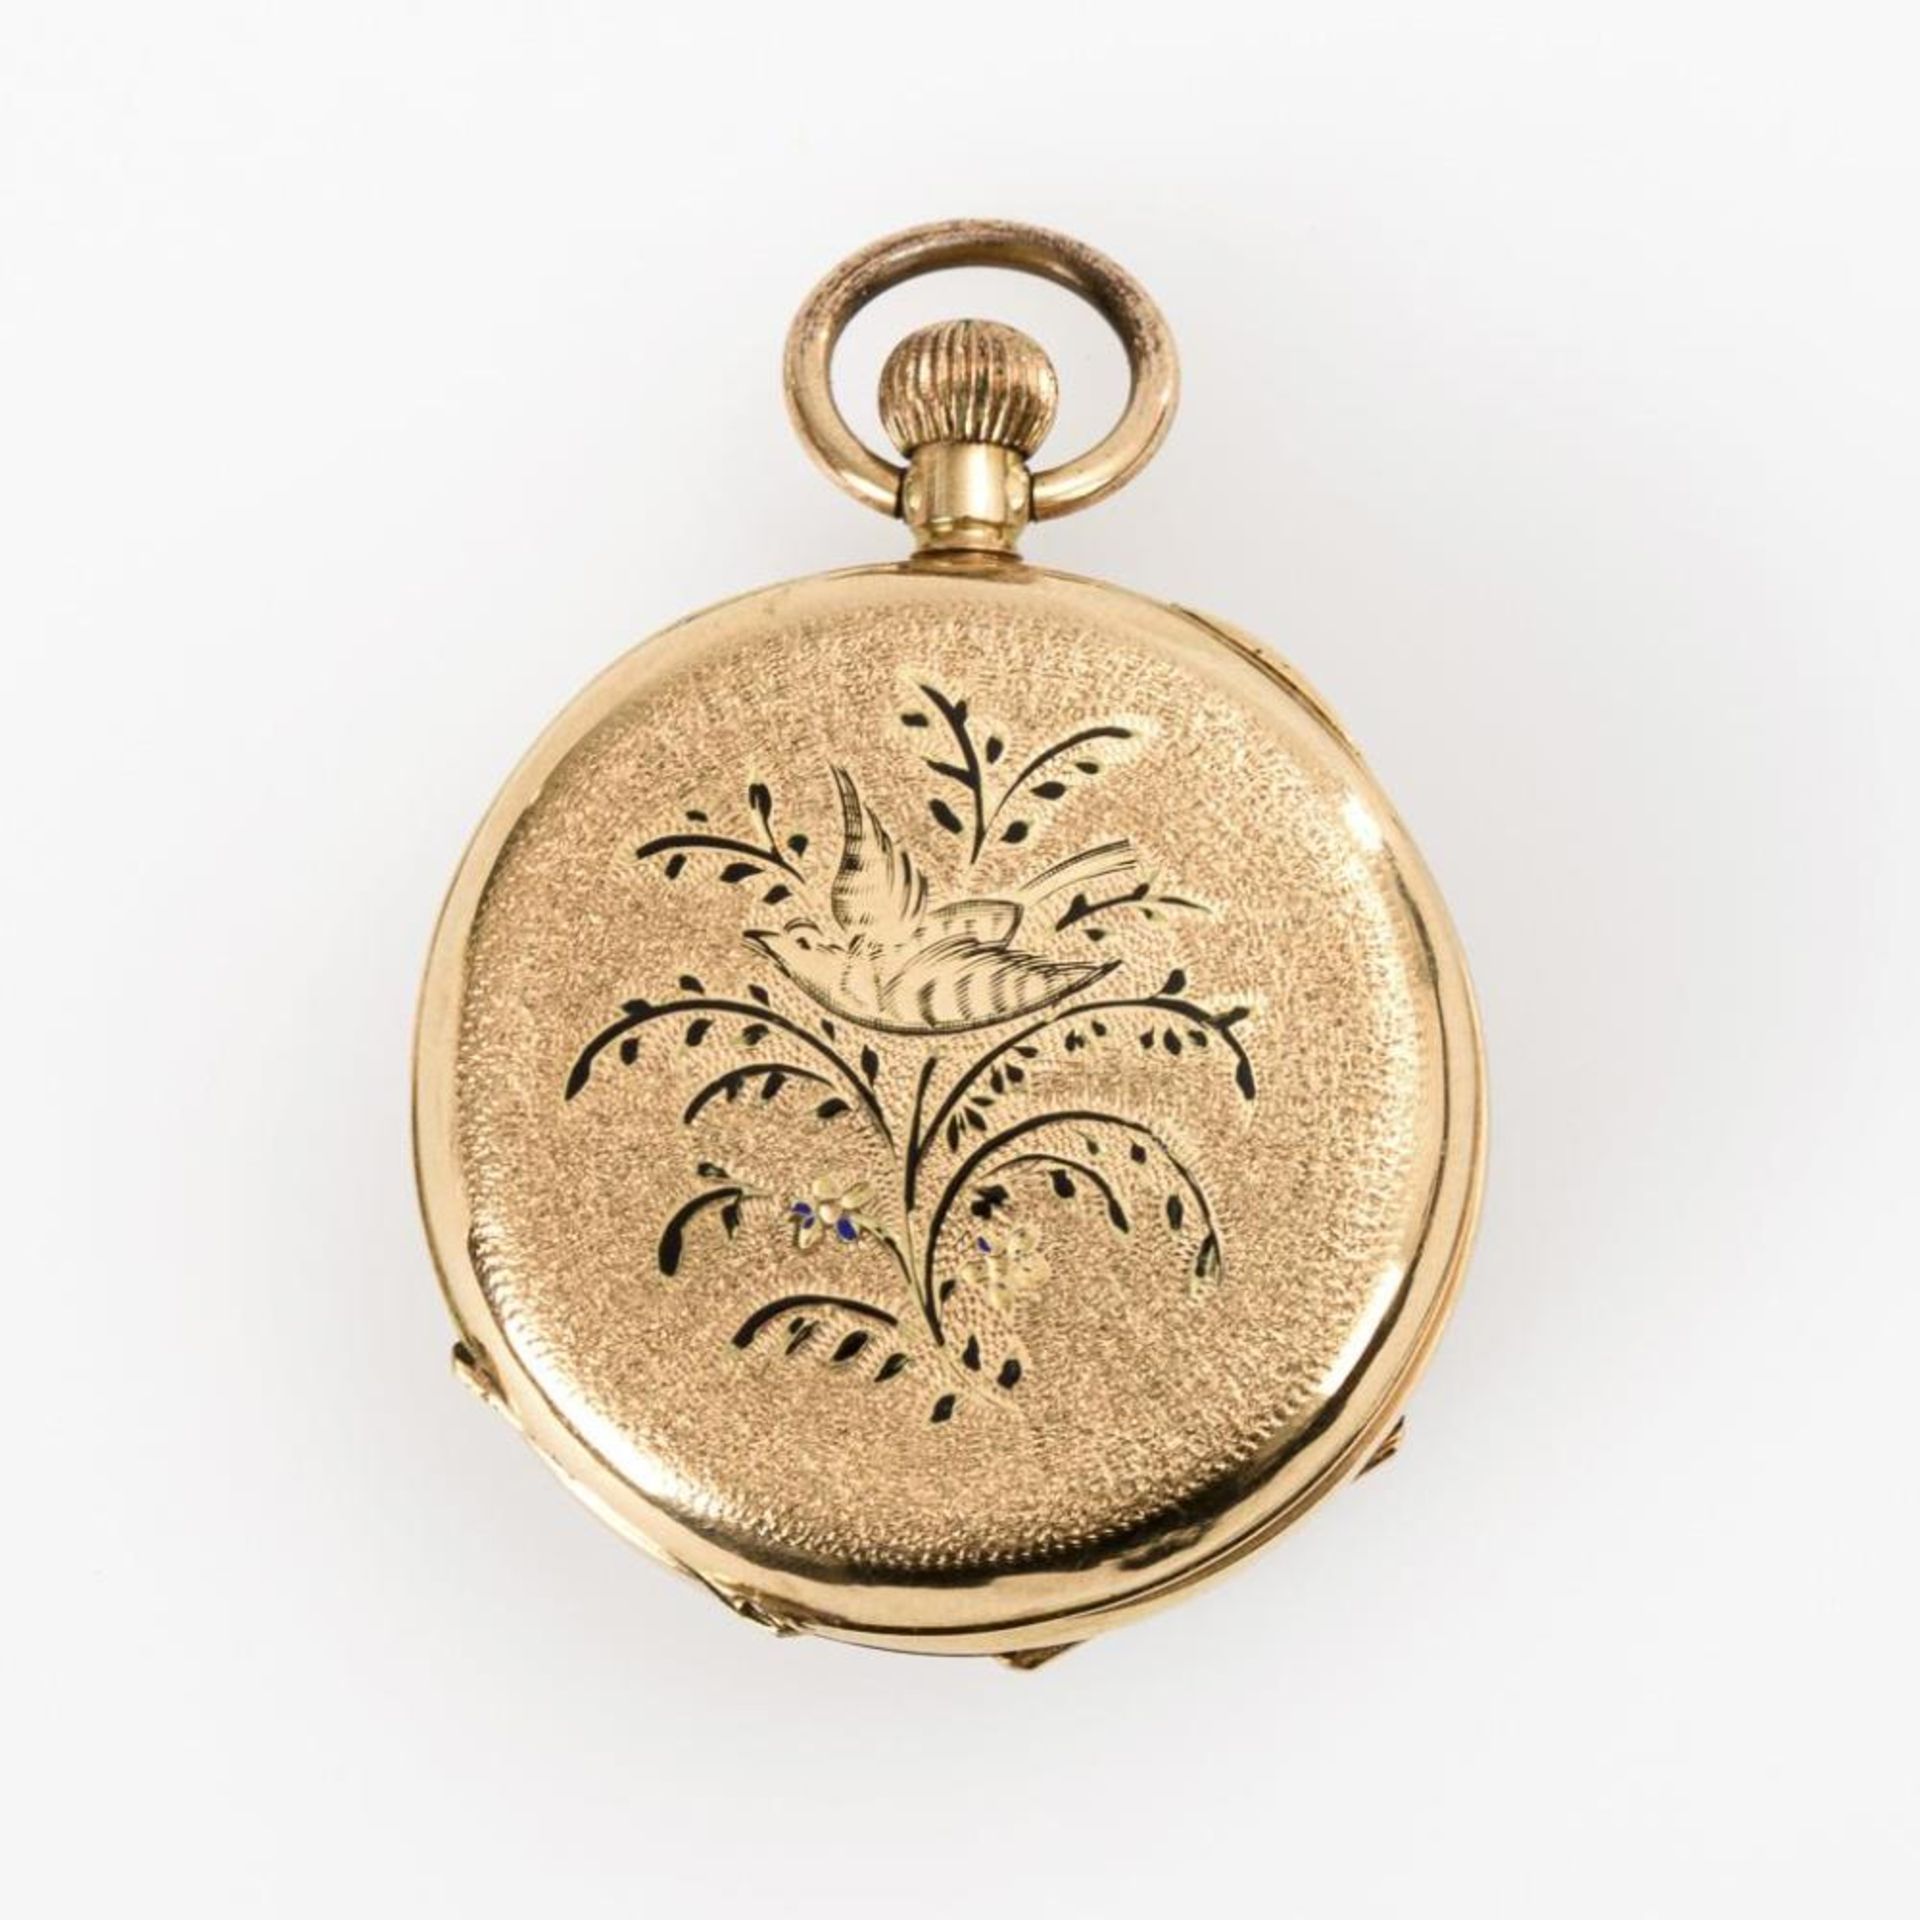 Goldene Damentaschenuhr mit Emaildekor. - Image 2 of 3